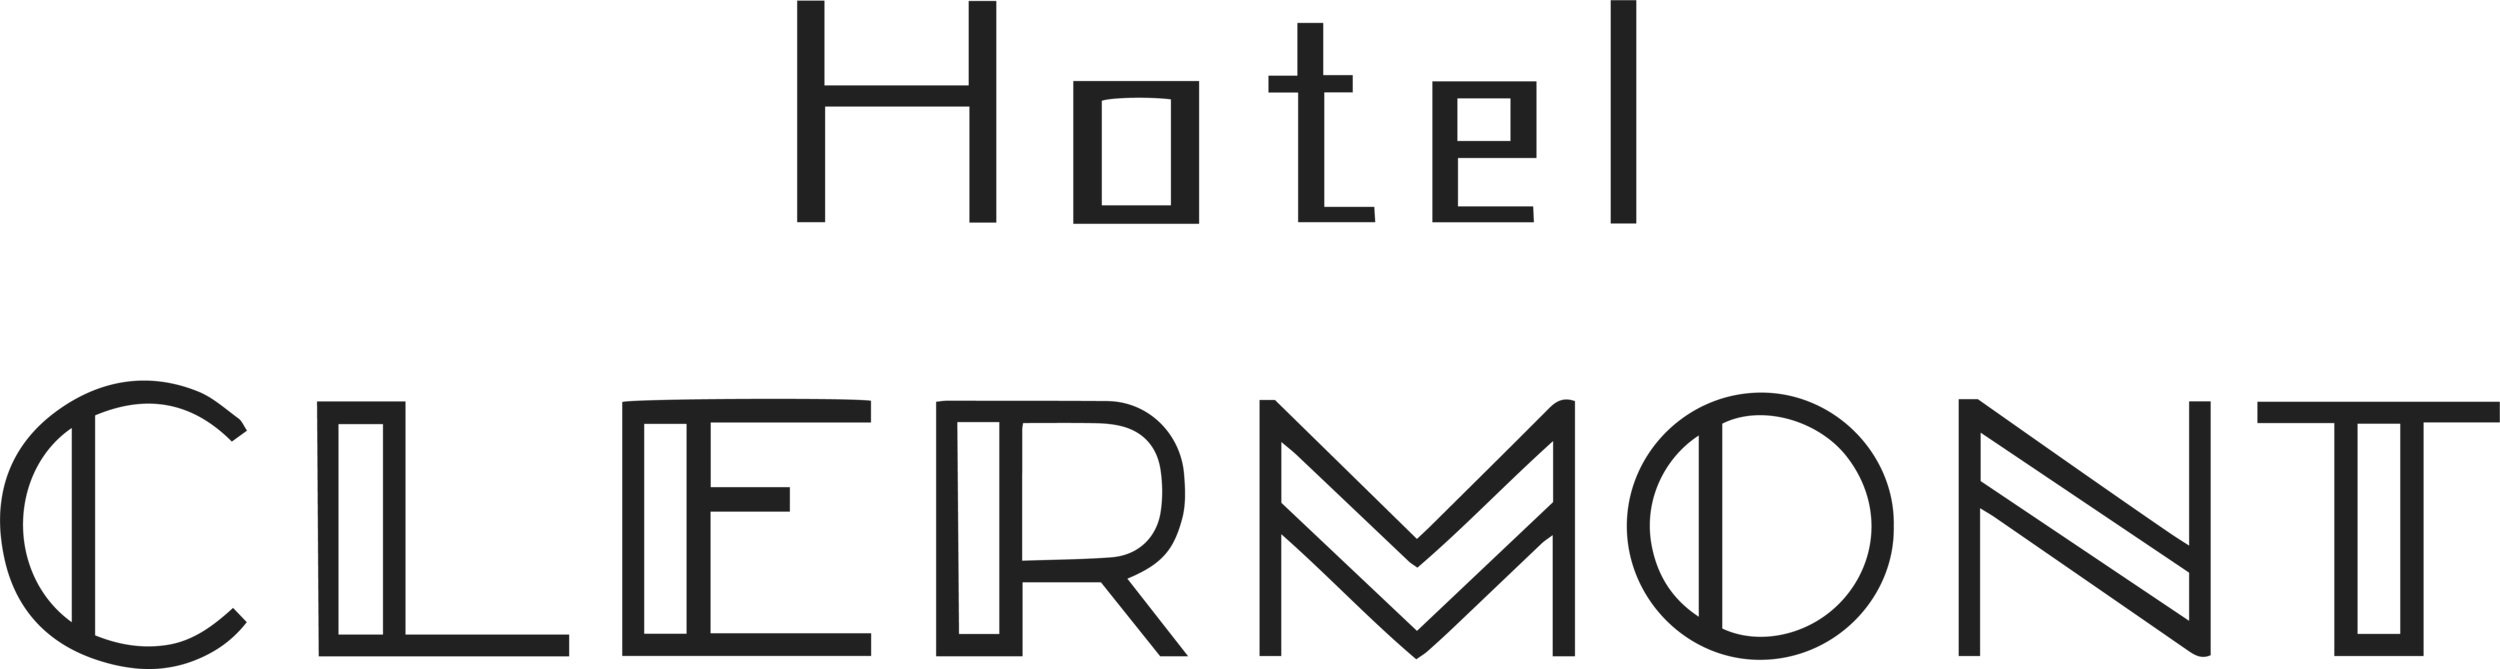 Hotel+Clermont+logo.jpg